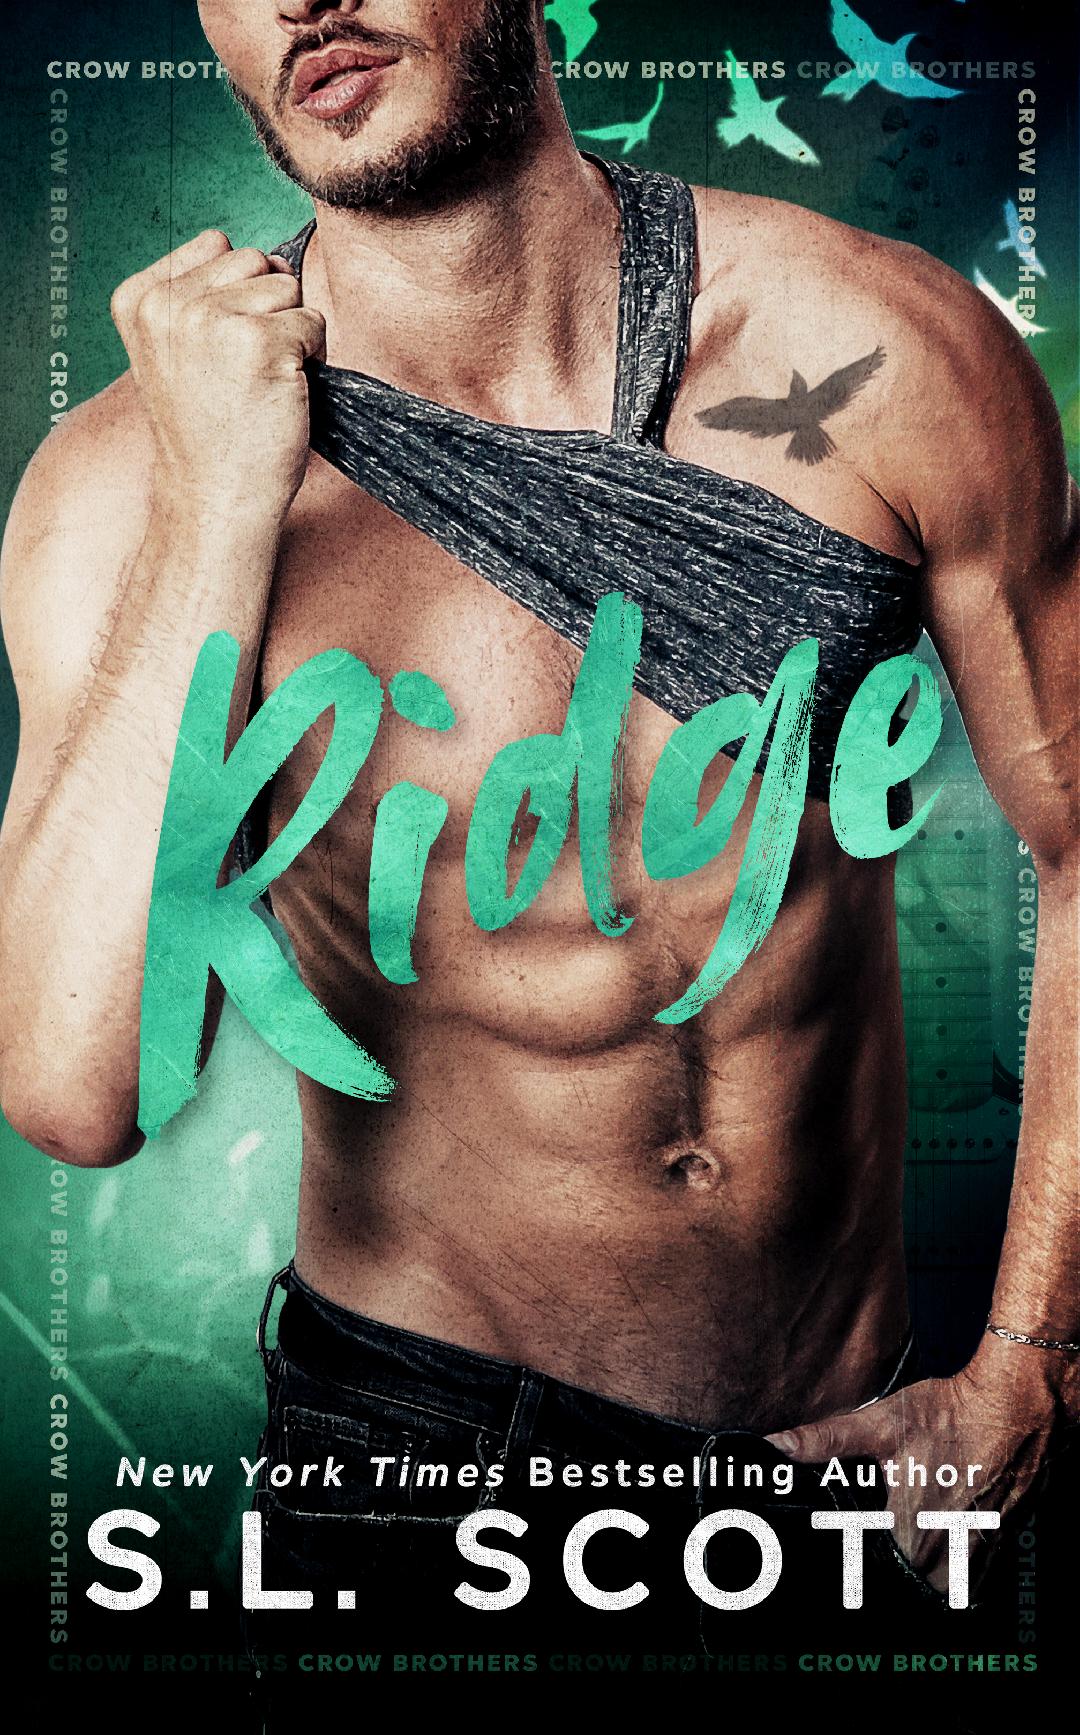 Ridge by S. L. Scott [Review]